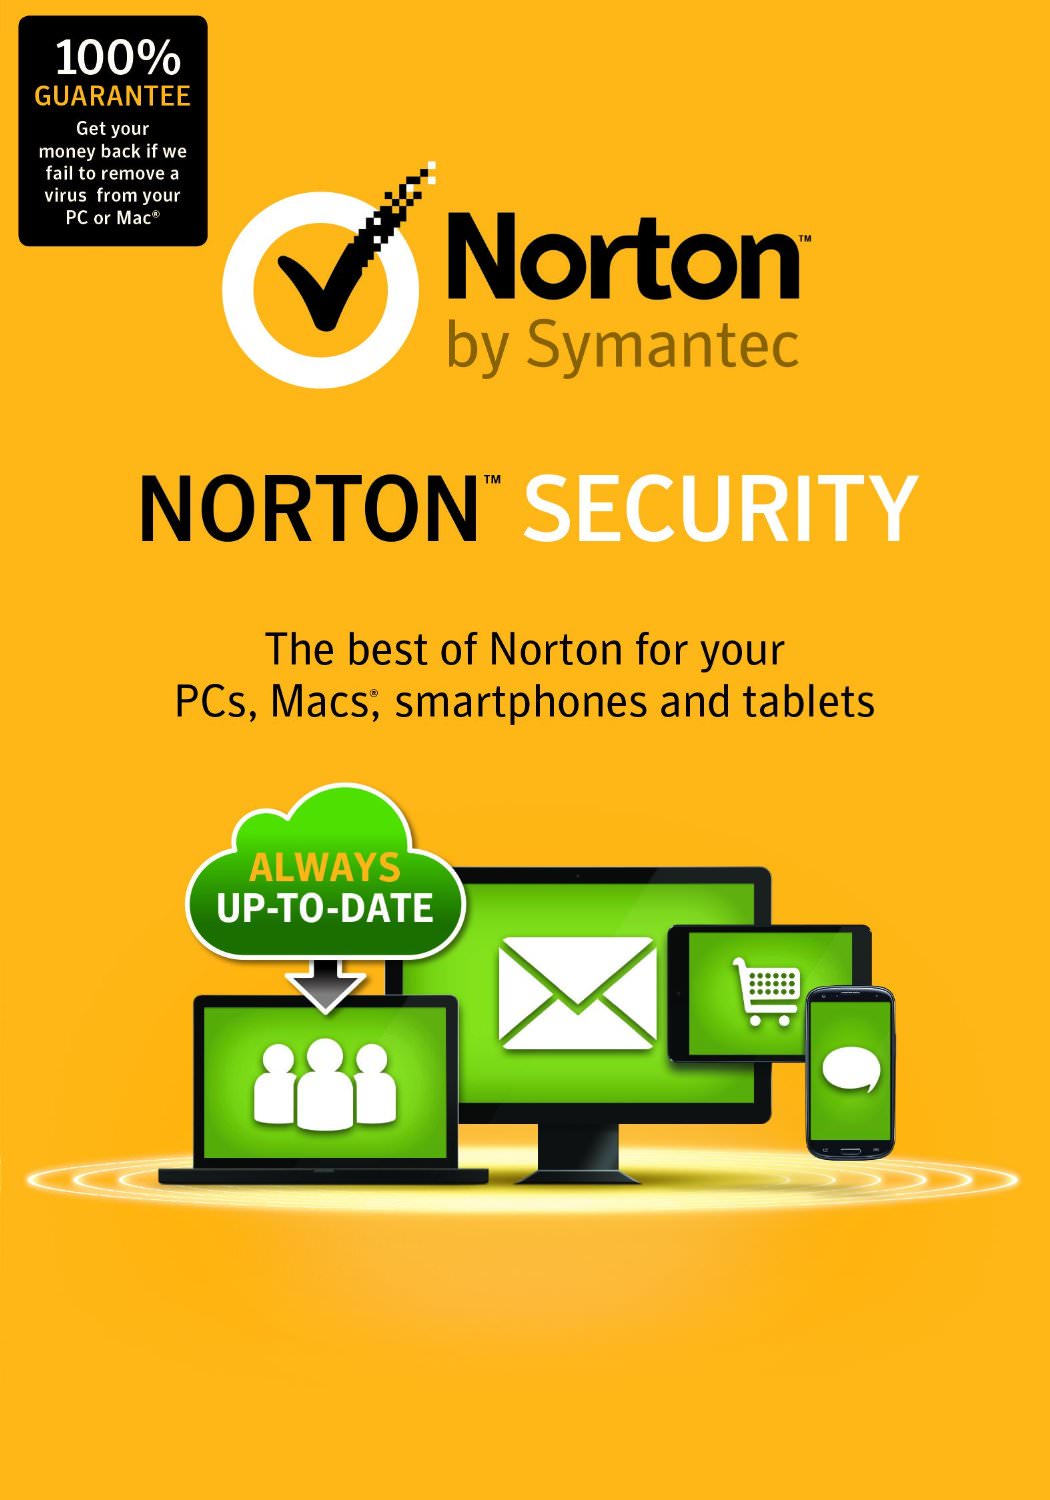 télécharger l'essai gratuit de Norton antivirus pendant 30 jours